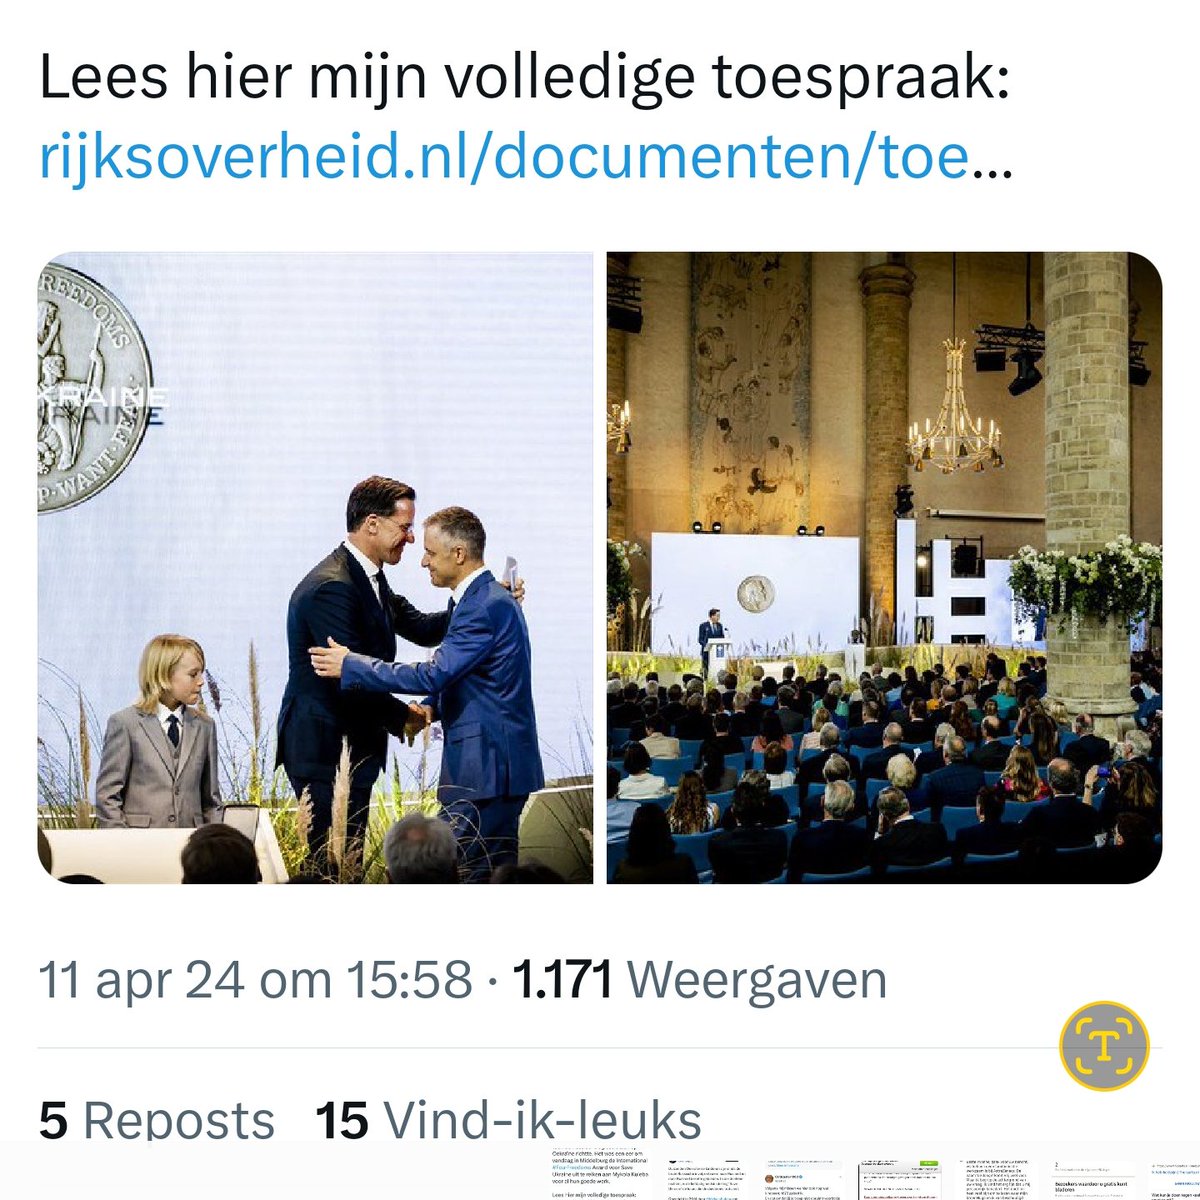 #Rutte  verwijderde deze post toen hij veel boze reacties kreeg over de honderden Nederlandse kinderen die nog steeds vermist worden nav #toeslagenaffaire. Hij herplaatste de tweet om 15.58

Nieuwe ronde, nieuwe kansen😆